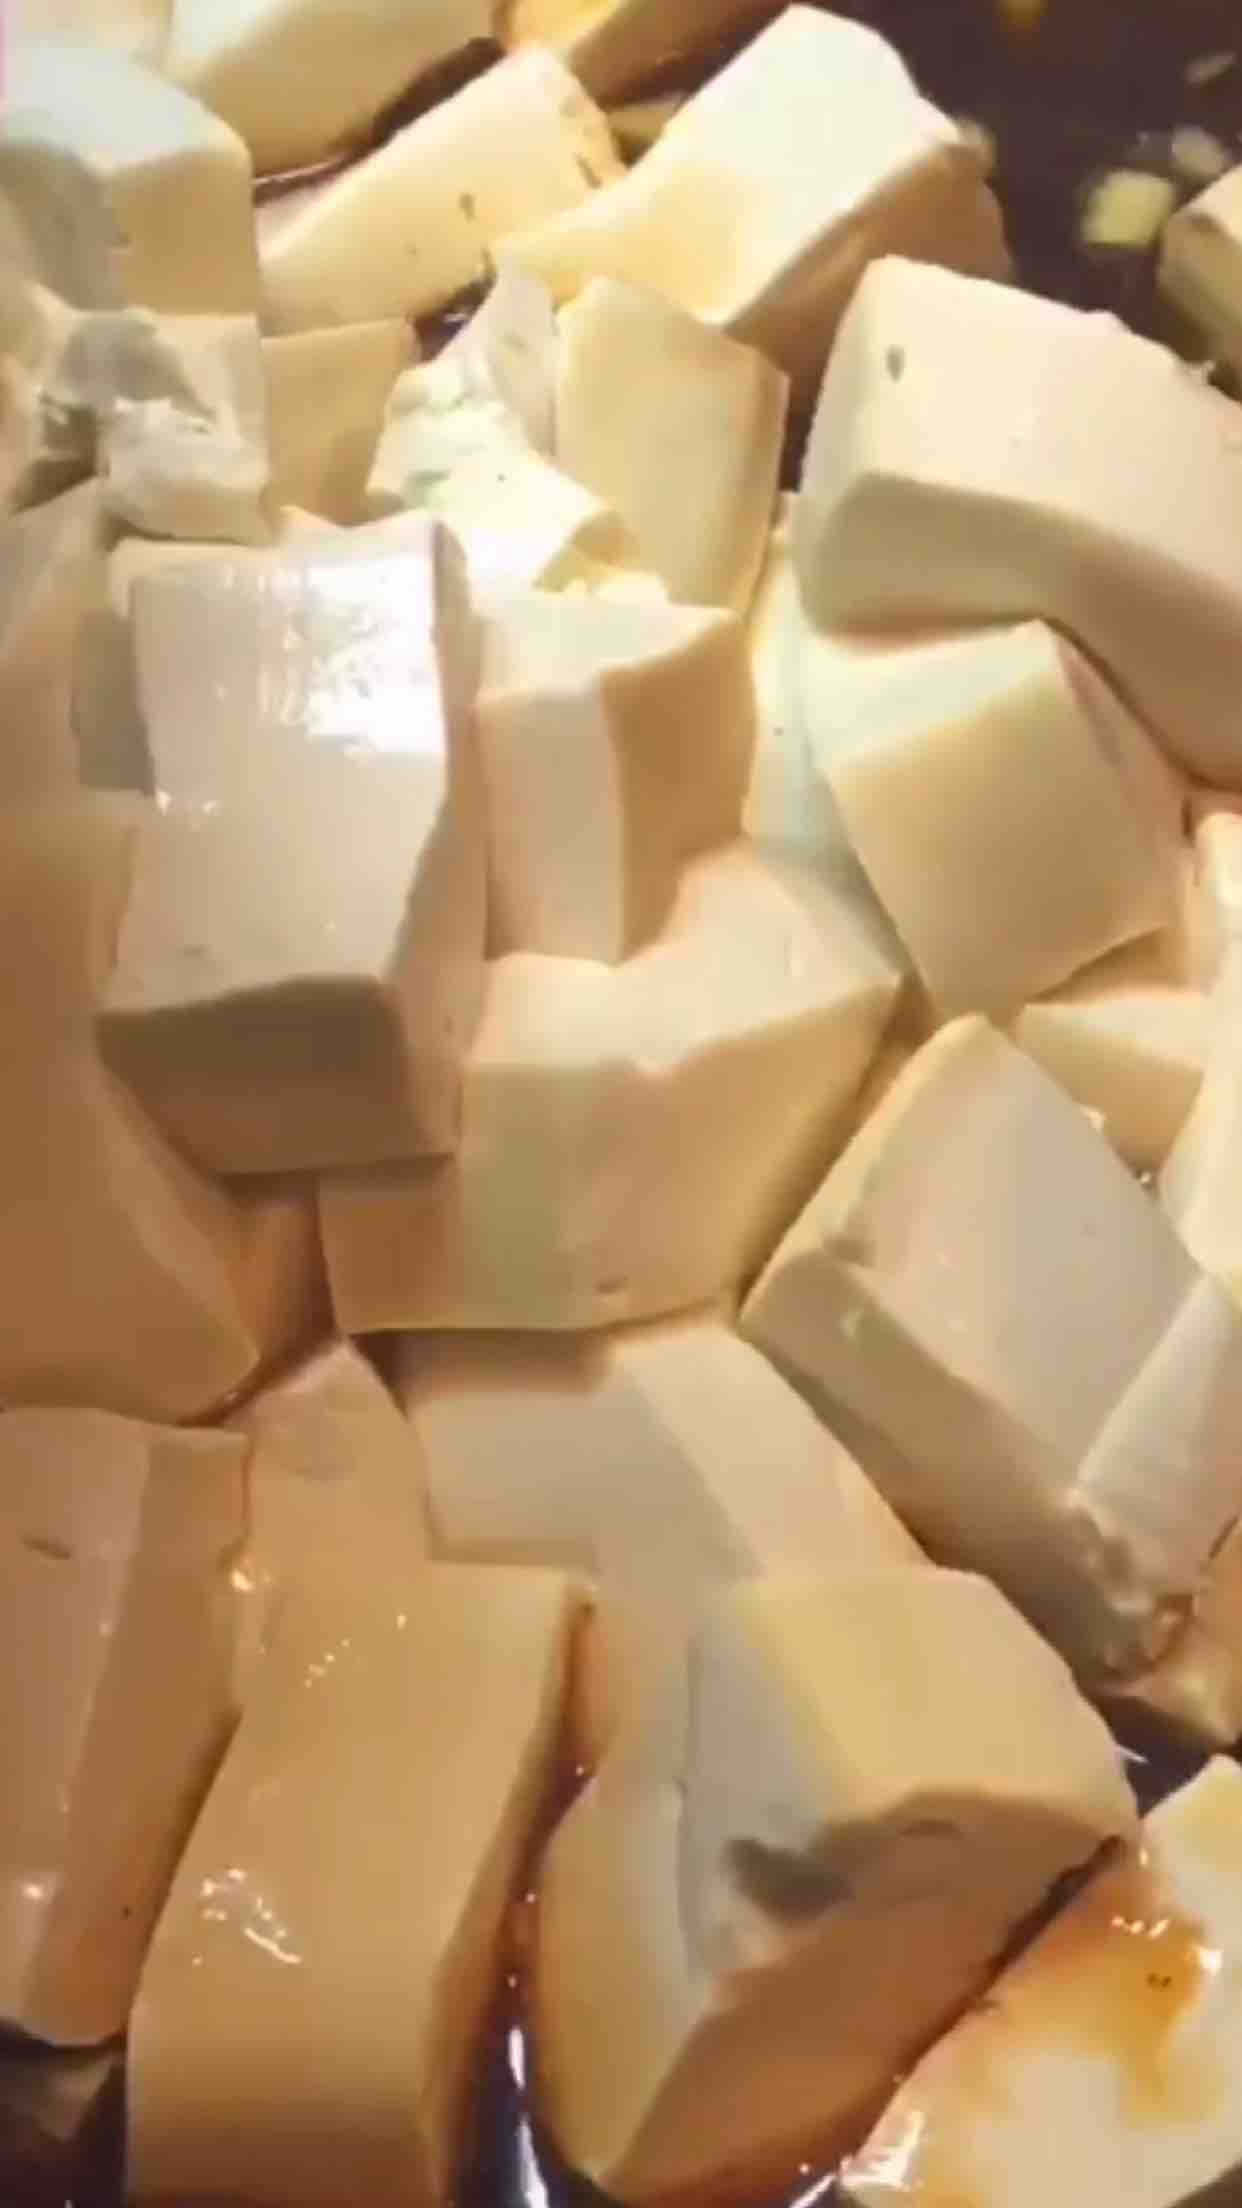 Flavored Tofu recipe